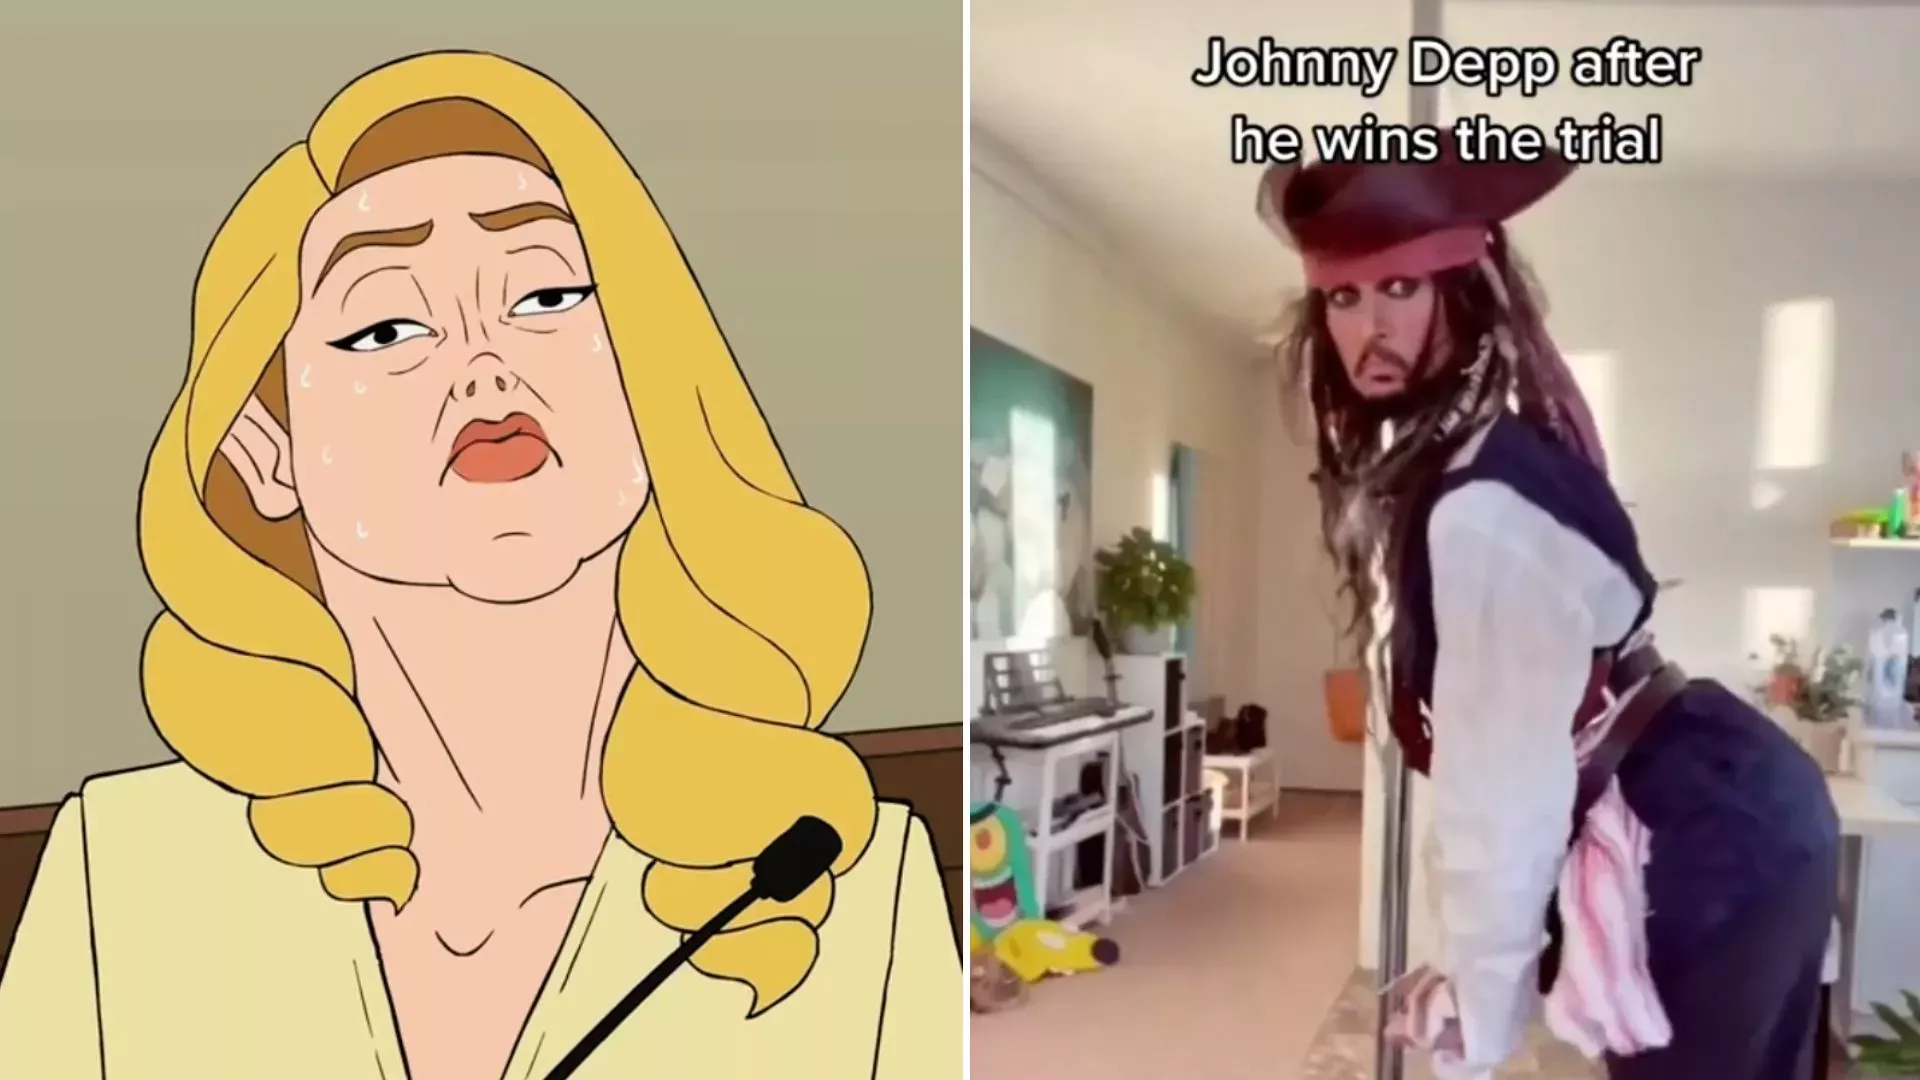 Los creadores de TikTok apuntan a Amber Heard con memes degradantes en medio del juicio a Johnny Depp - Nacional | Globalnews.ca